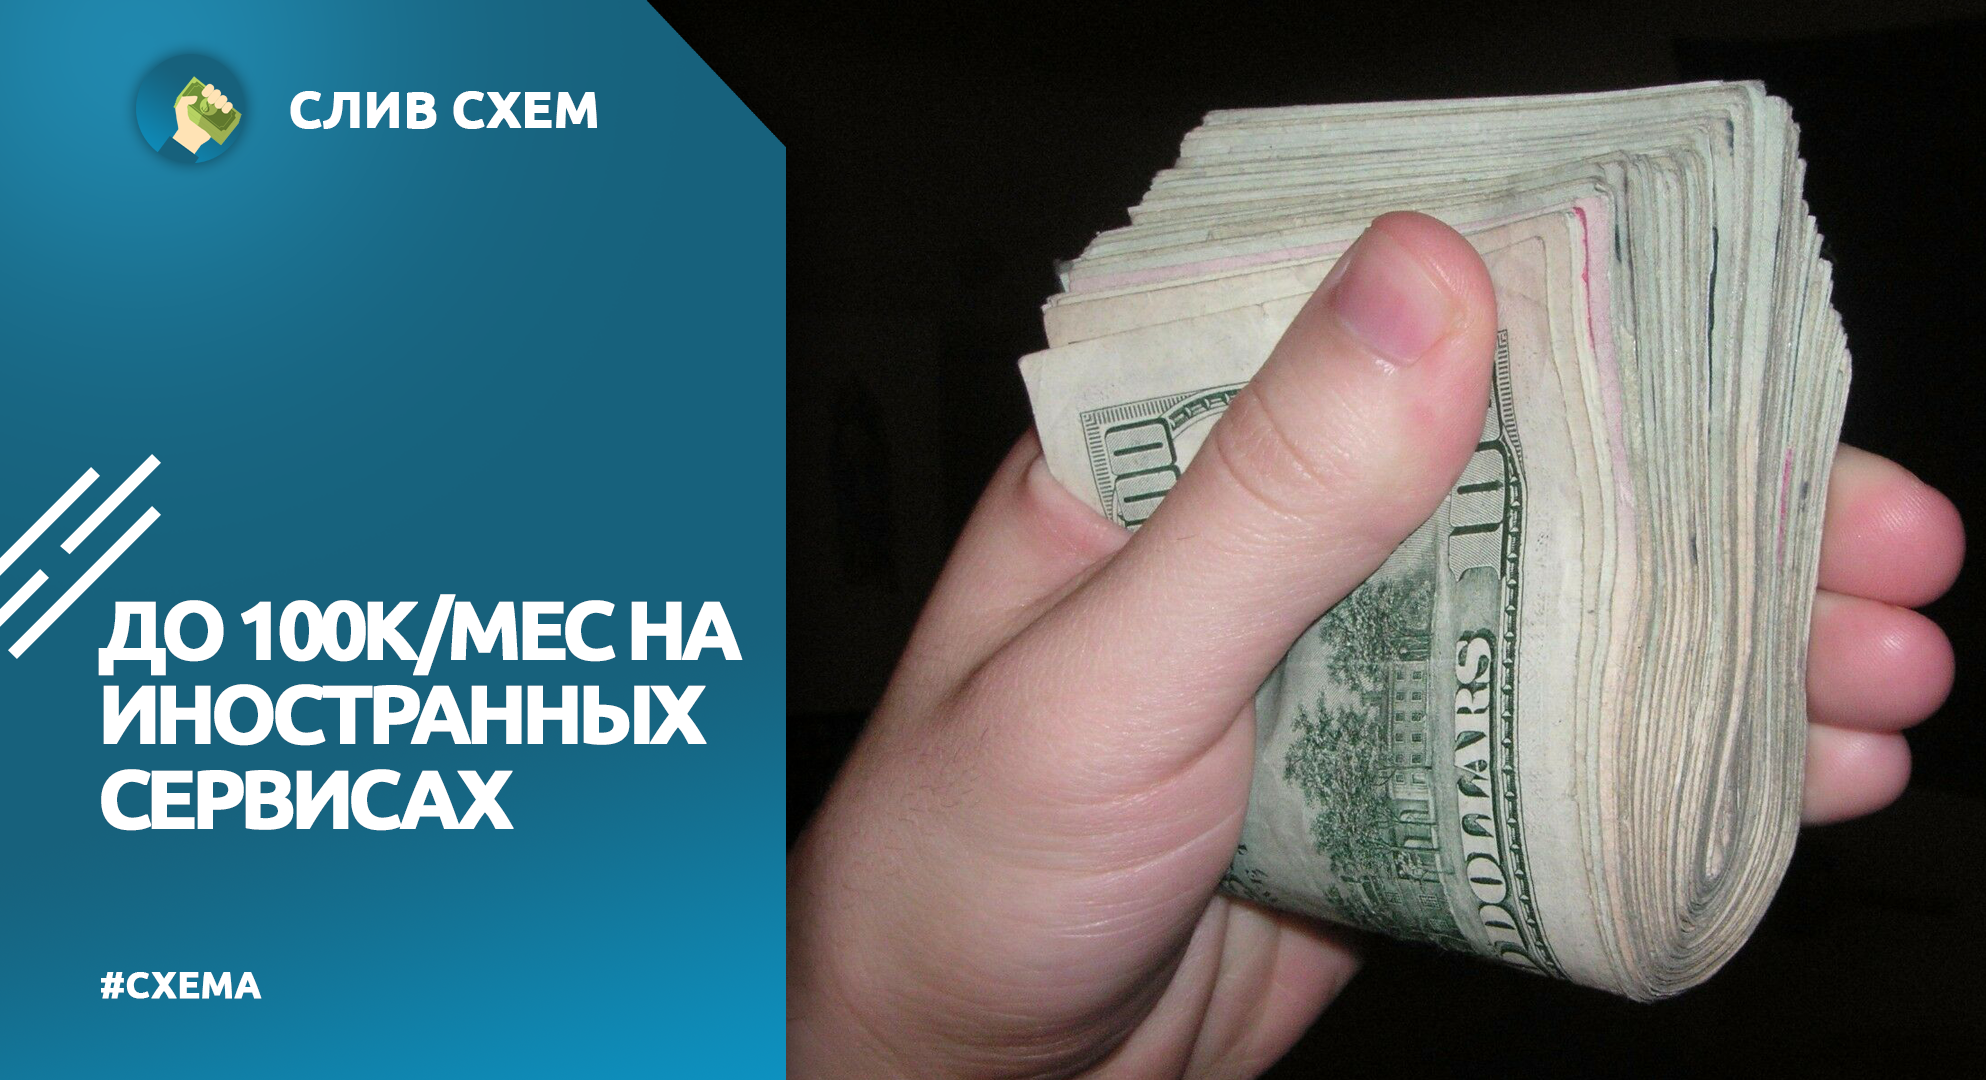 Бесплатный заработок в телеграмме без вложений на русском языке фото 110